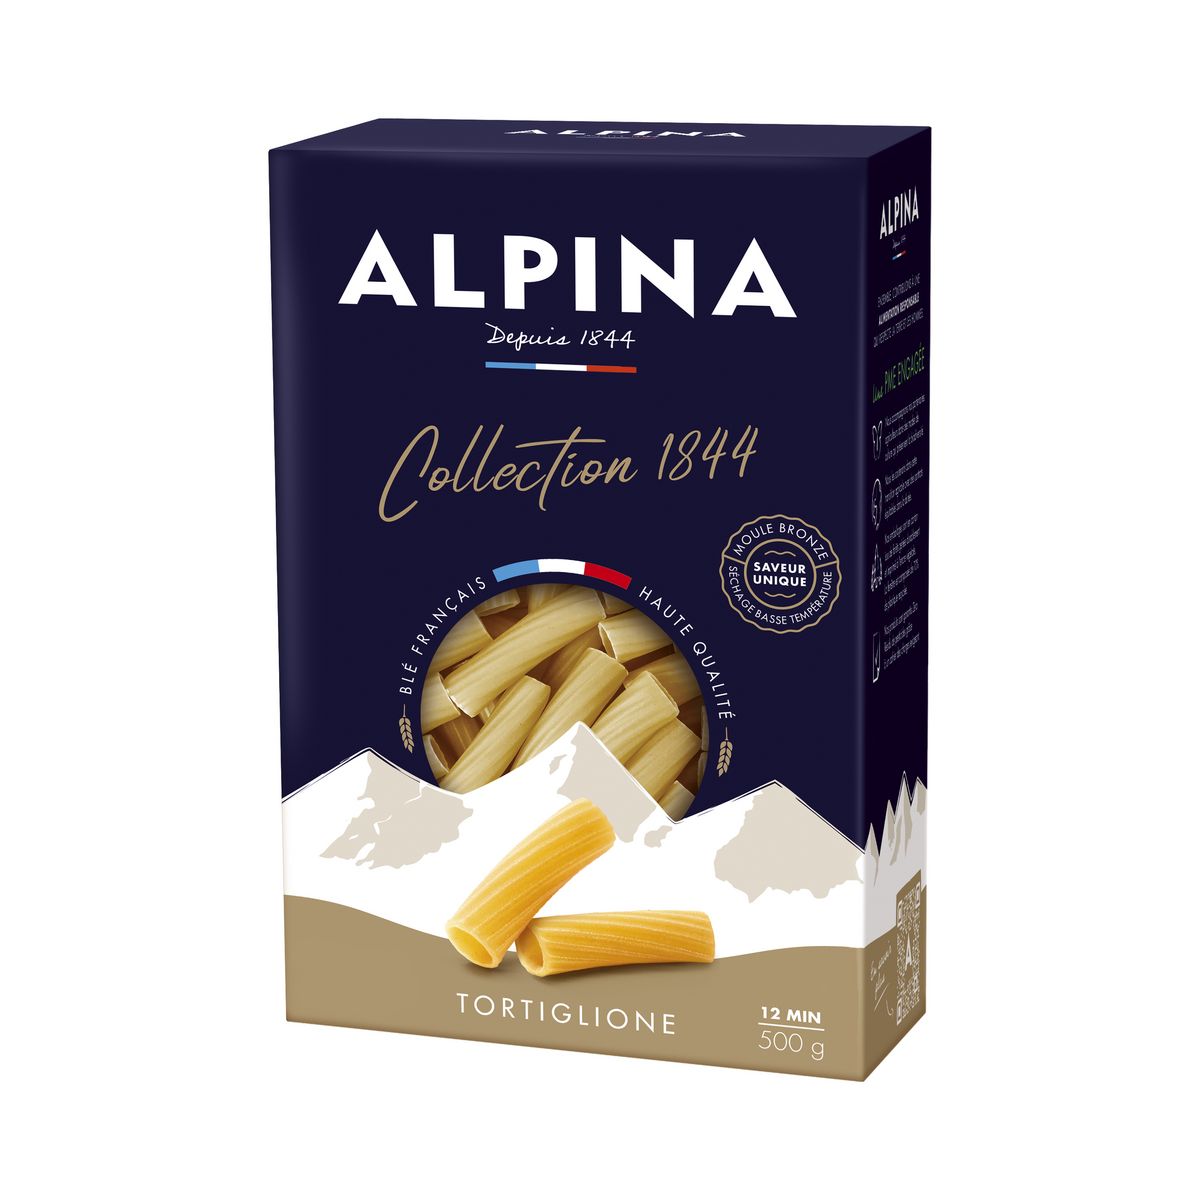 ALPINA Pâtes tortigliones collection 1844 500g